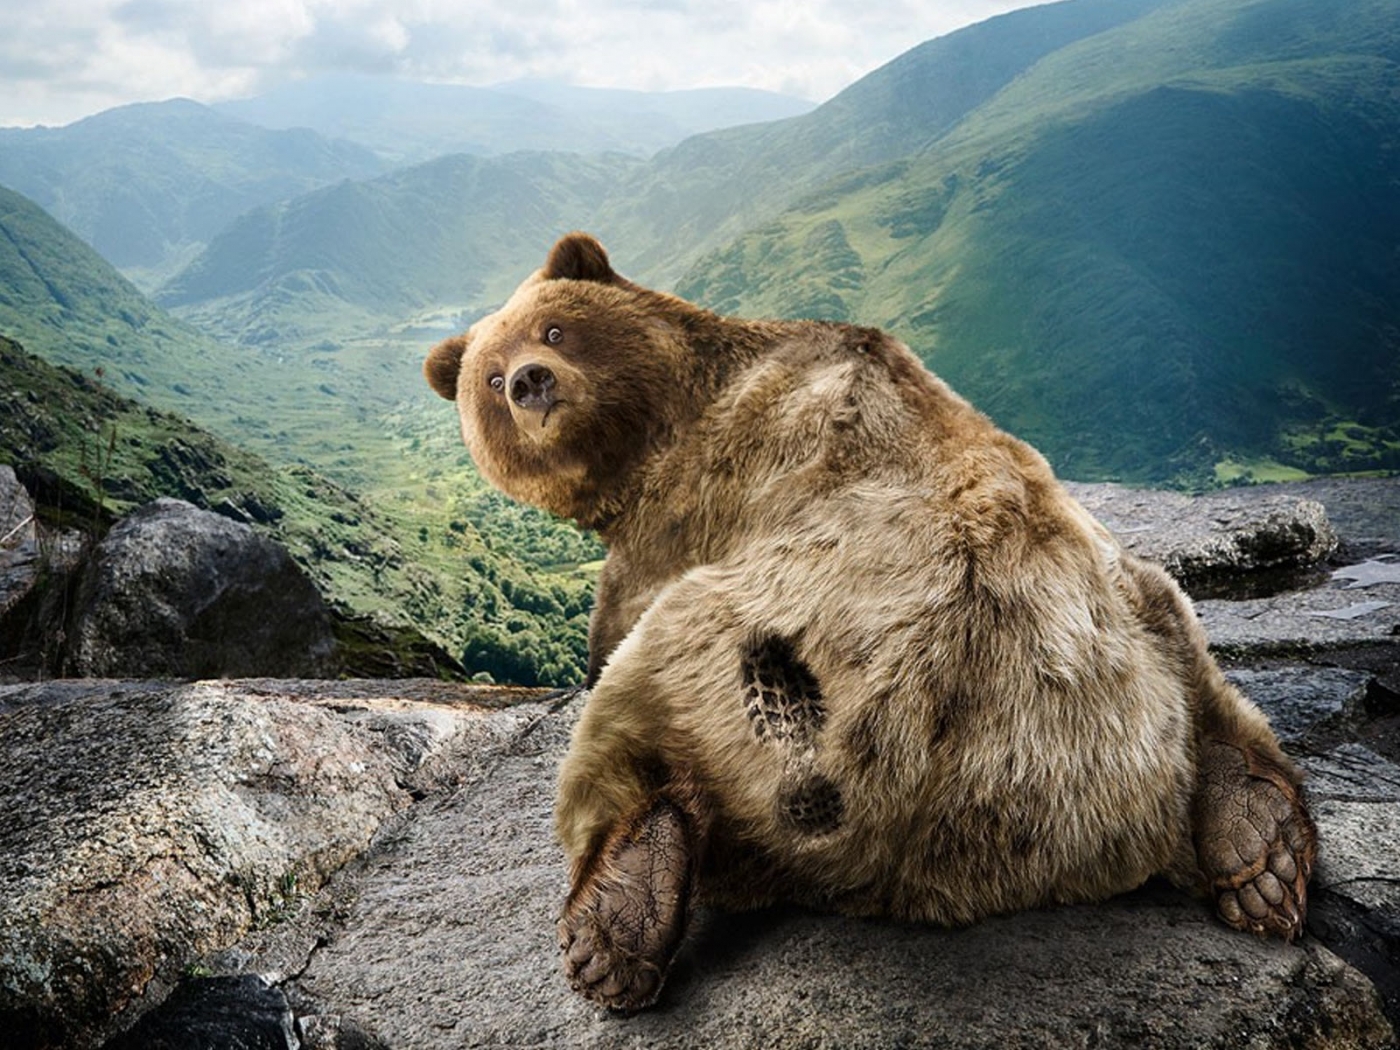 Скачать обои бесплатно Животные, Медведи картинка на рабочий стол ПК